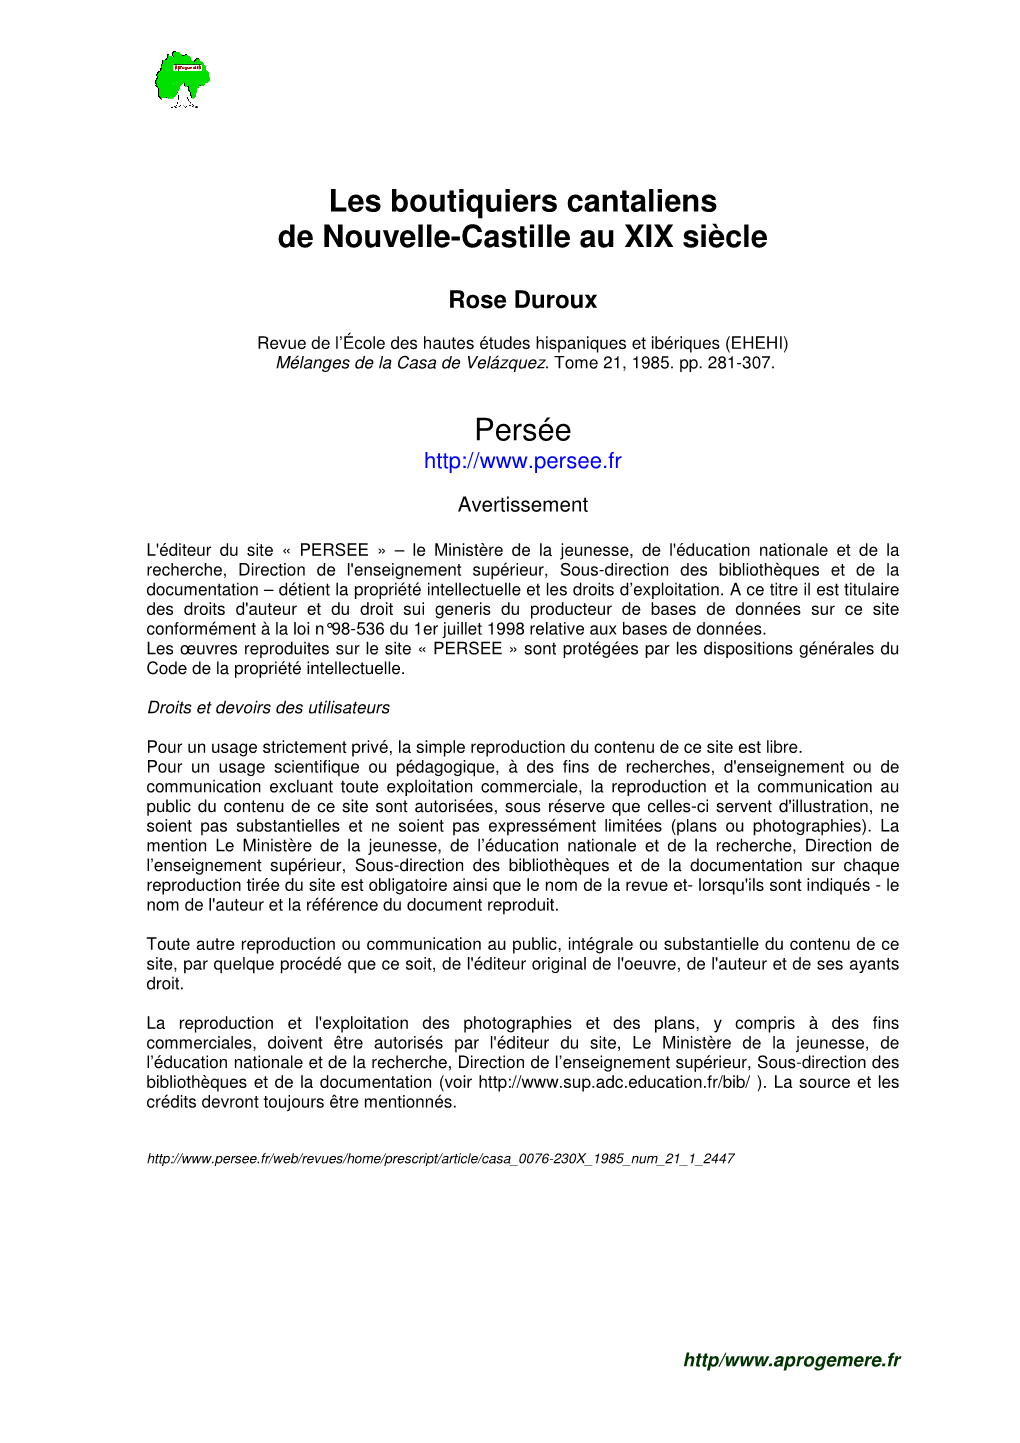 Les Boutiquiers Cantaliens De Nouvelle-Castille Au Xixe Siècle